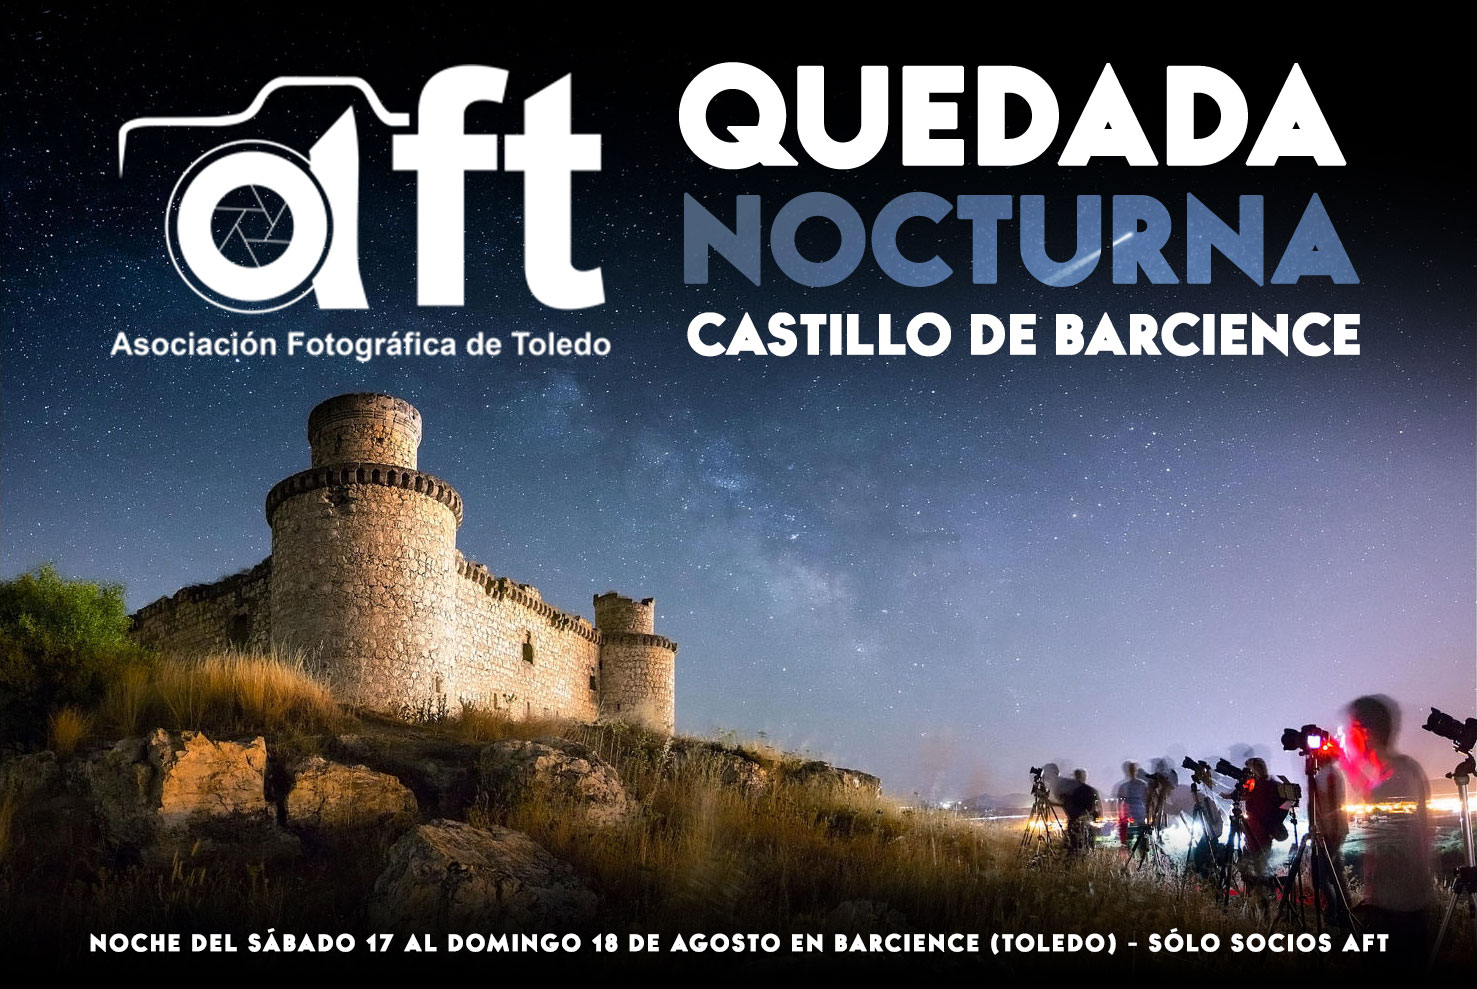 QUEDADA Nocturna Castillo de Barcience